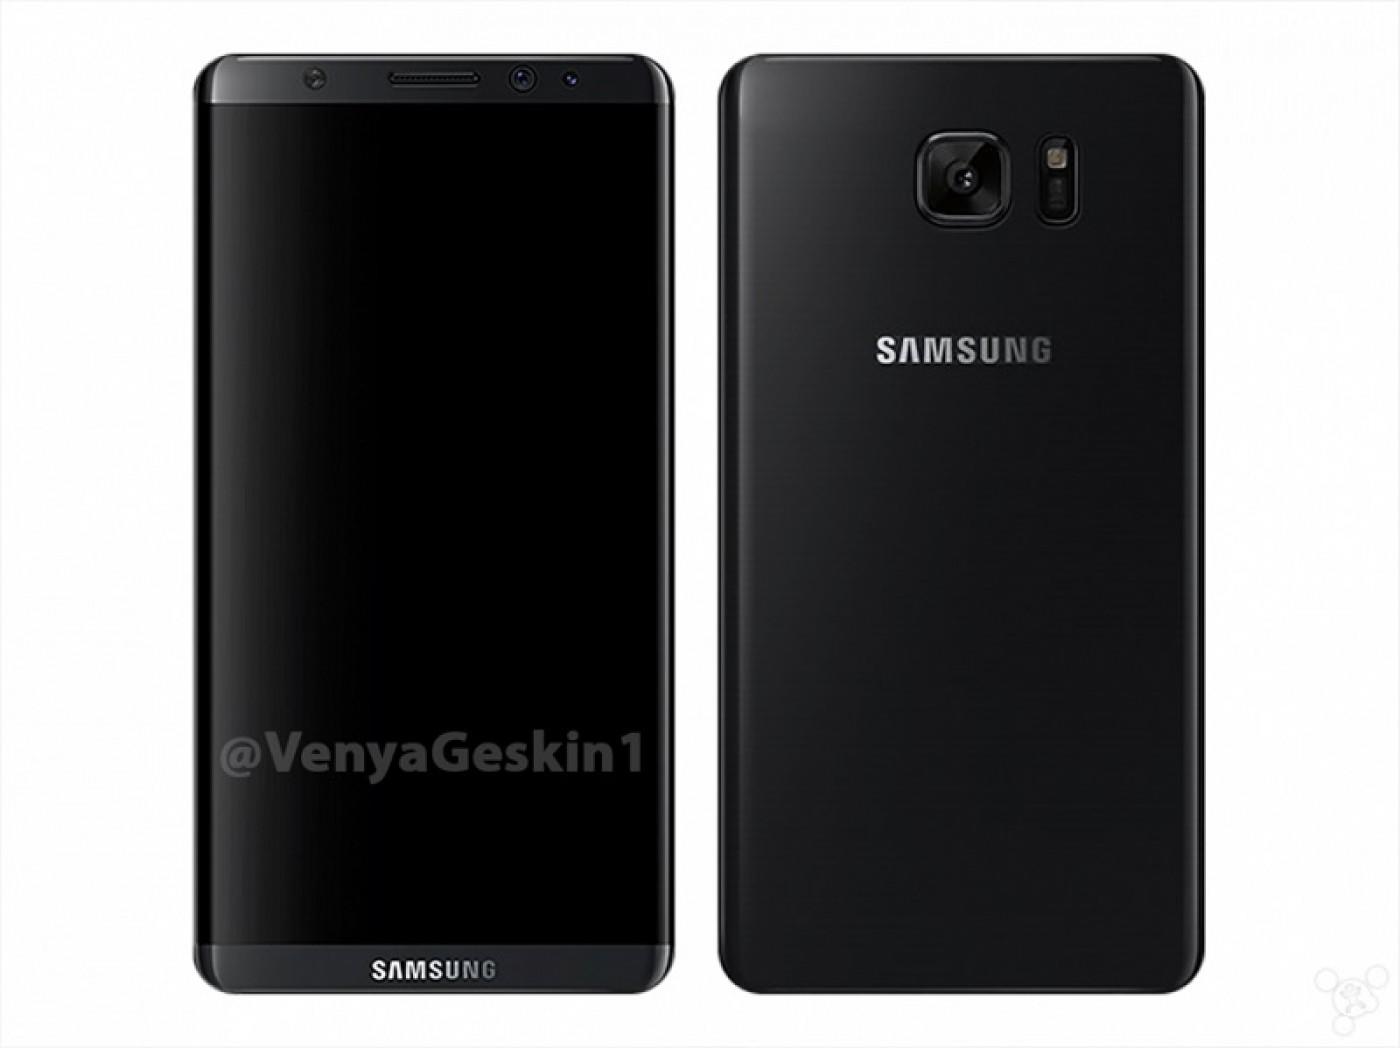 Samsung Galaxy S8 confirmado para lanzarse en Abril